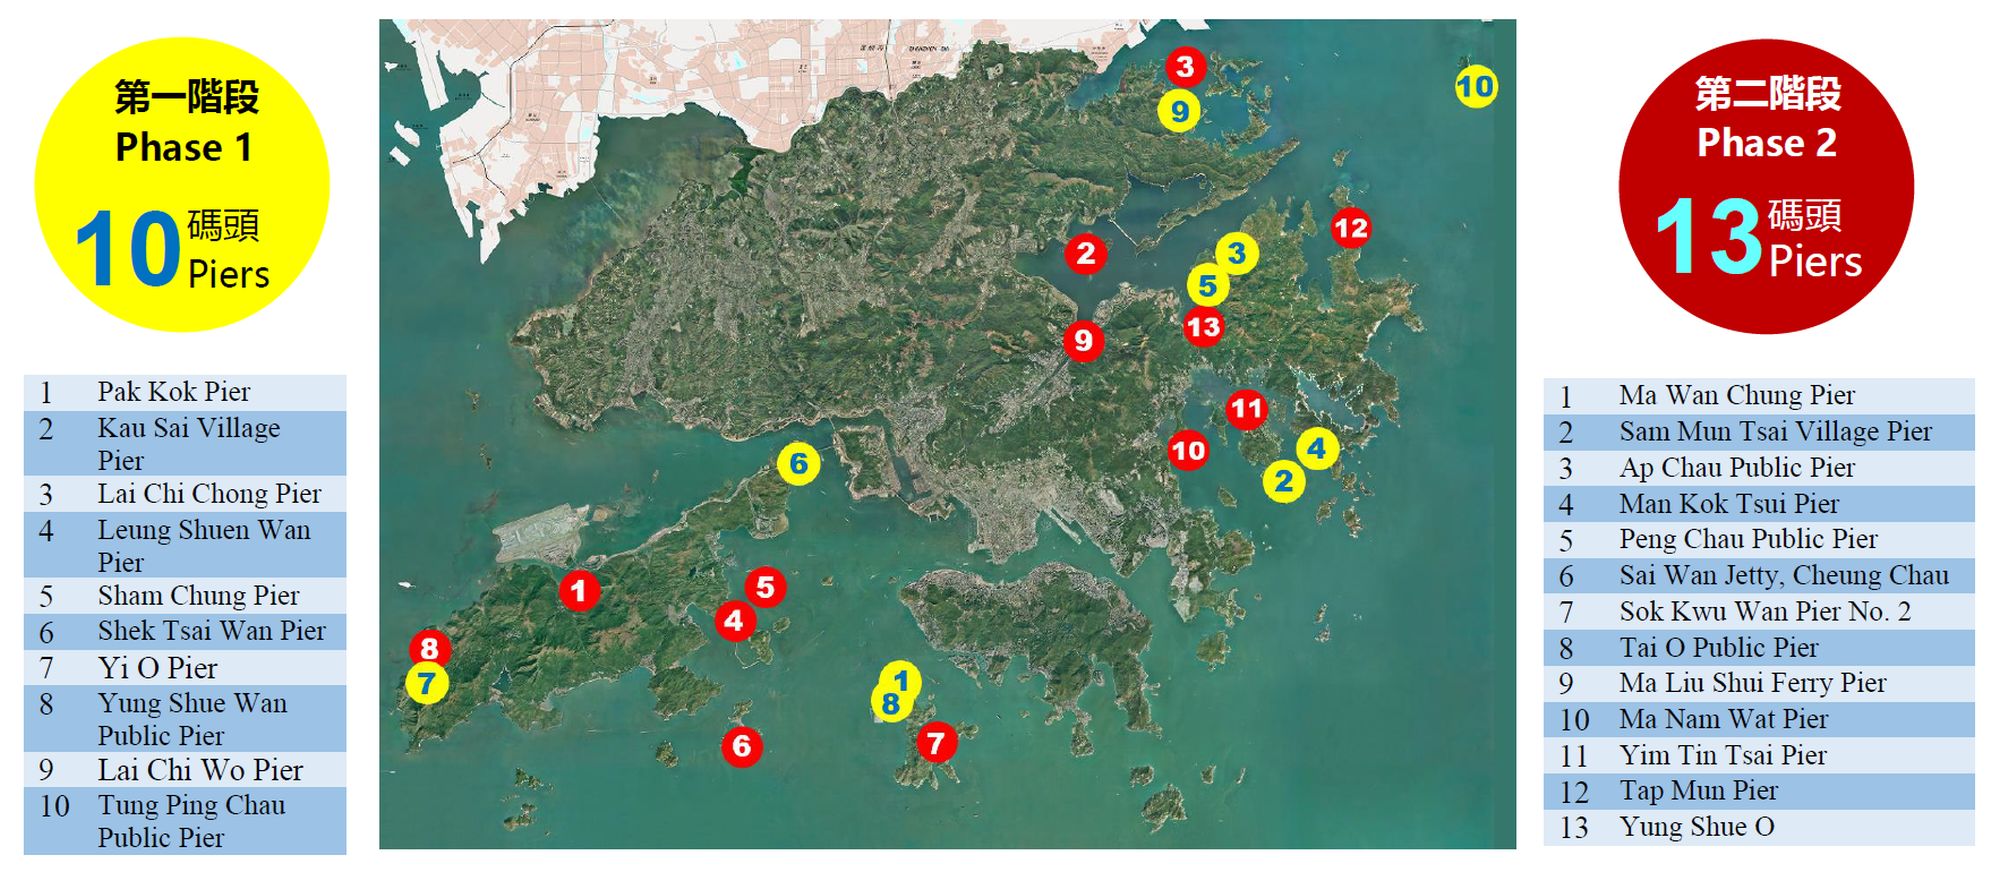 「改善碼頭計劃」涵蓋23個位於新界及離島的公共碼頭。